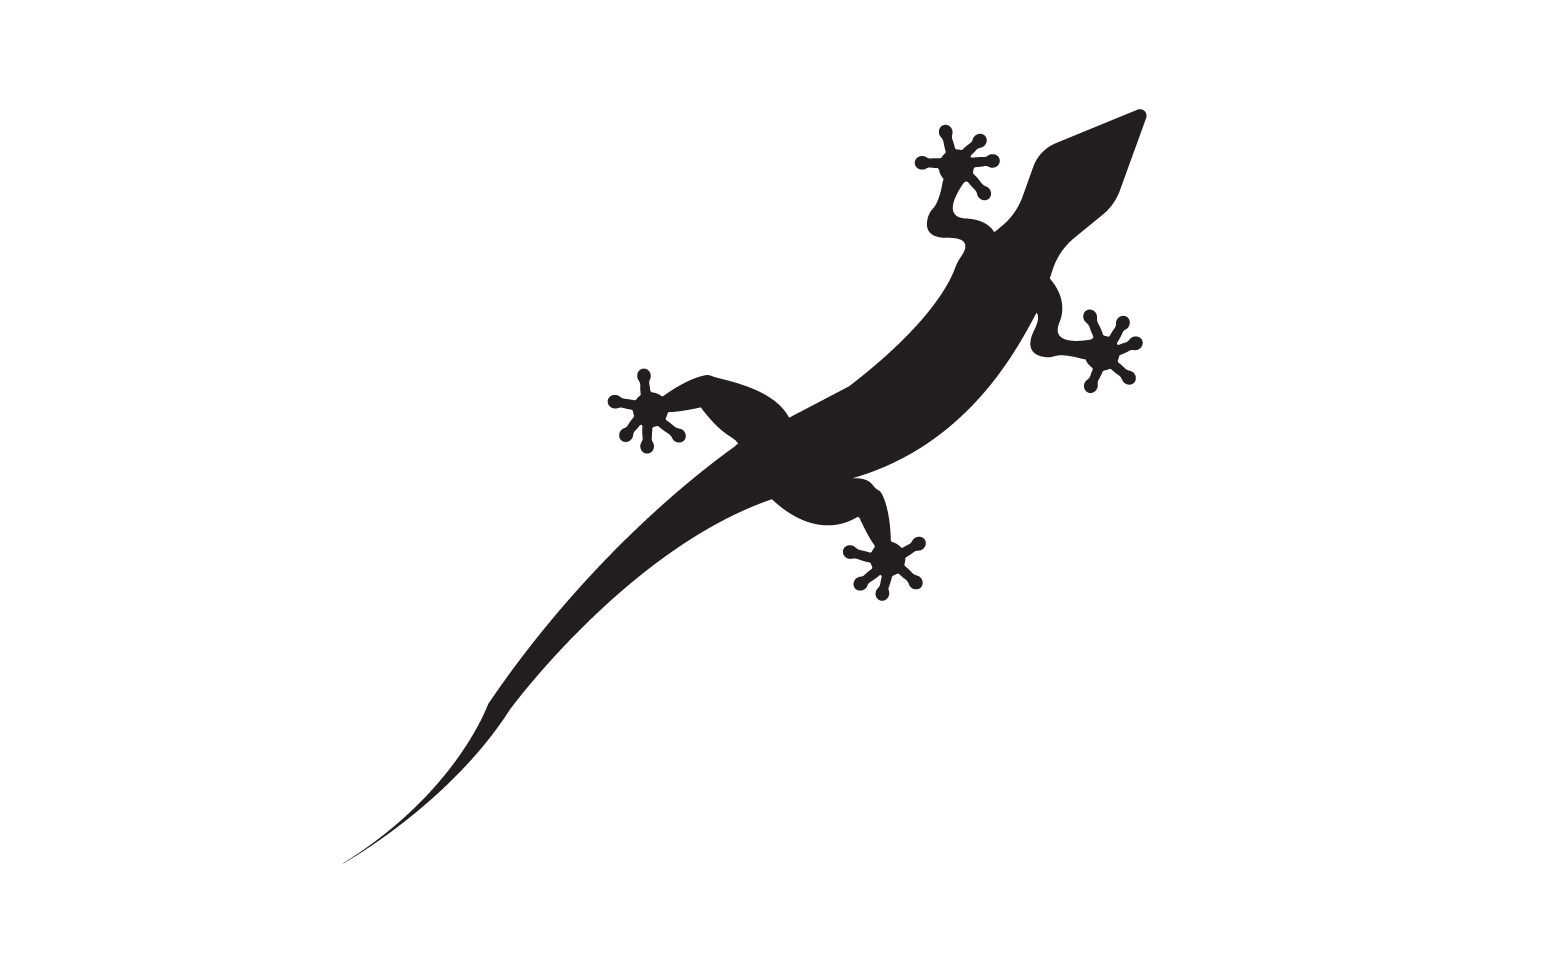 Lizard chameleon home lizard logo v44